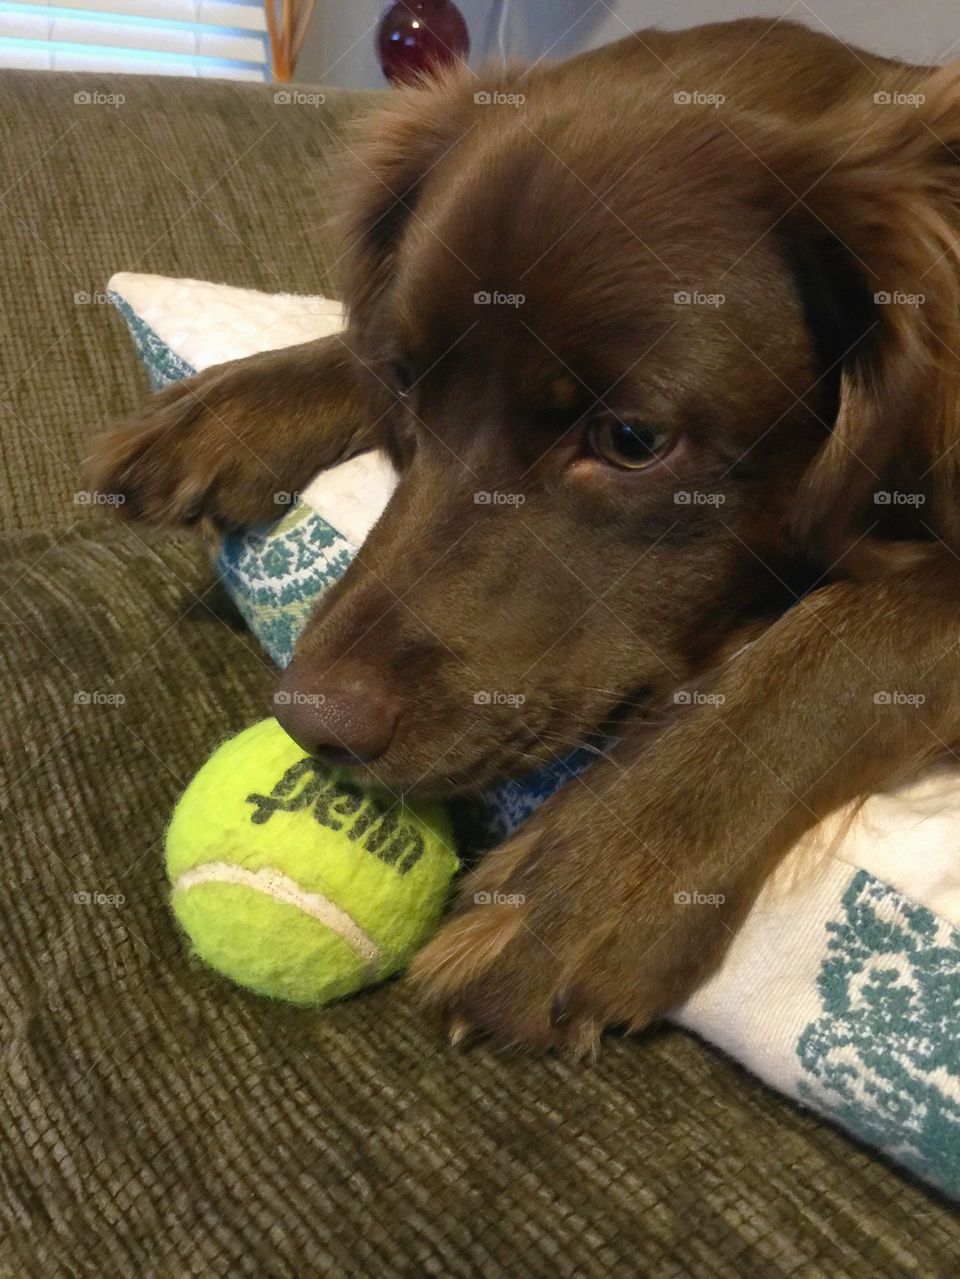 Dog and tennis ball 